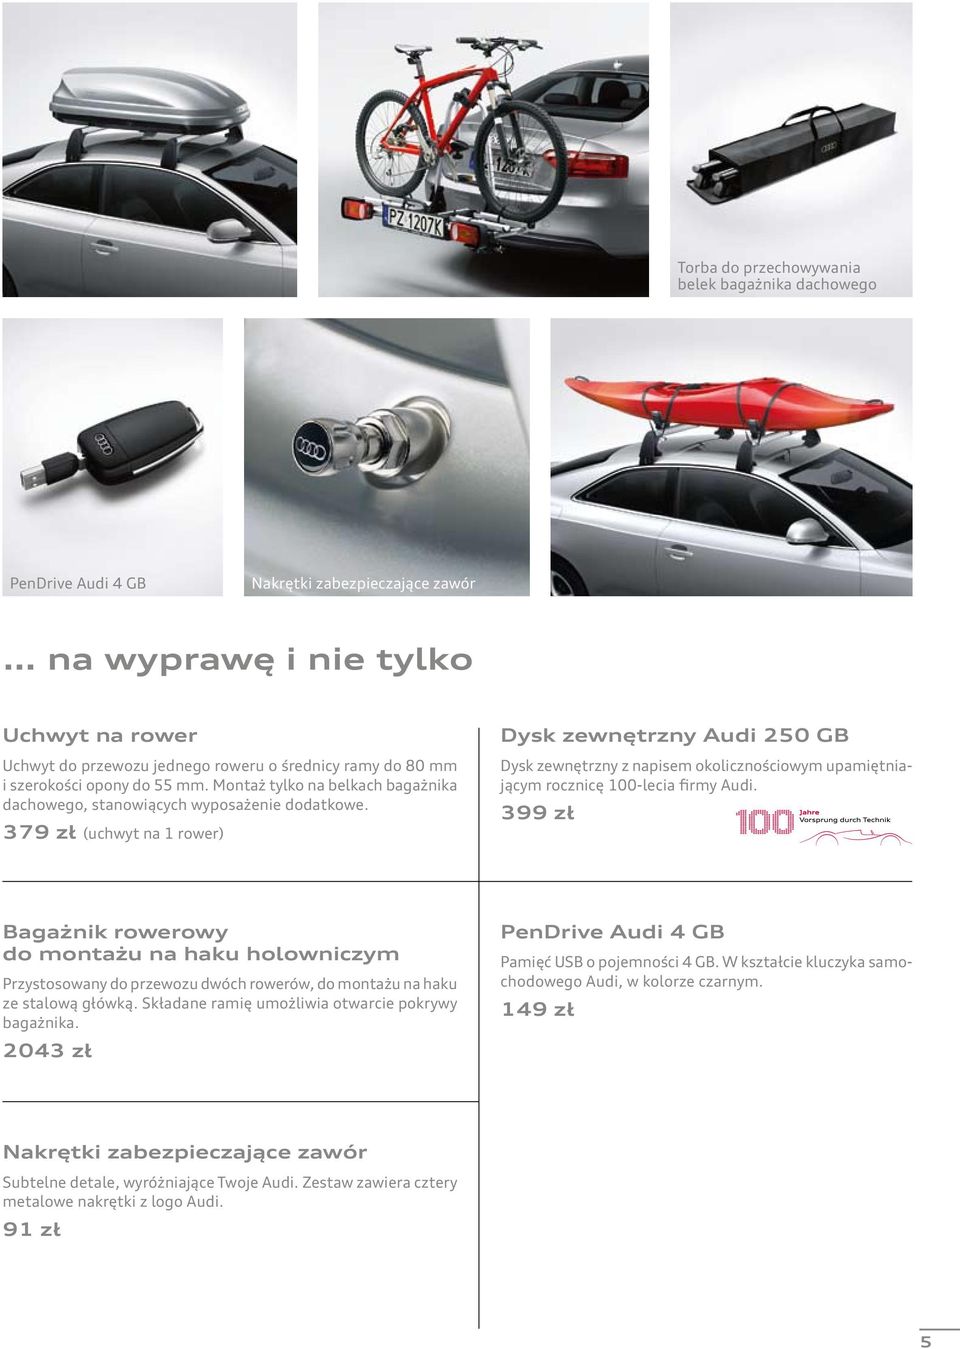 379 zł (uchwyt na 1 rower) Dysk zewnętrzny Audi 250 GB Dysk zewnętrzny z napisem okolicznościowym upamiętniającym rocznicę 100-lecia firmy Audi.